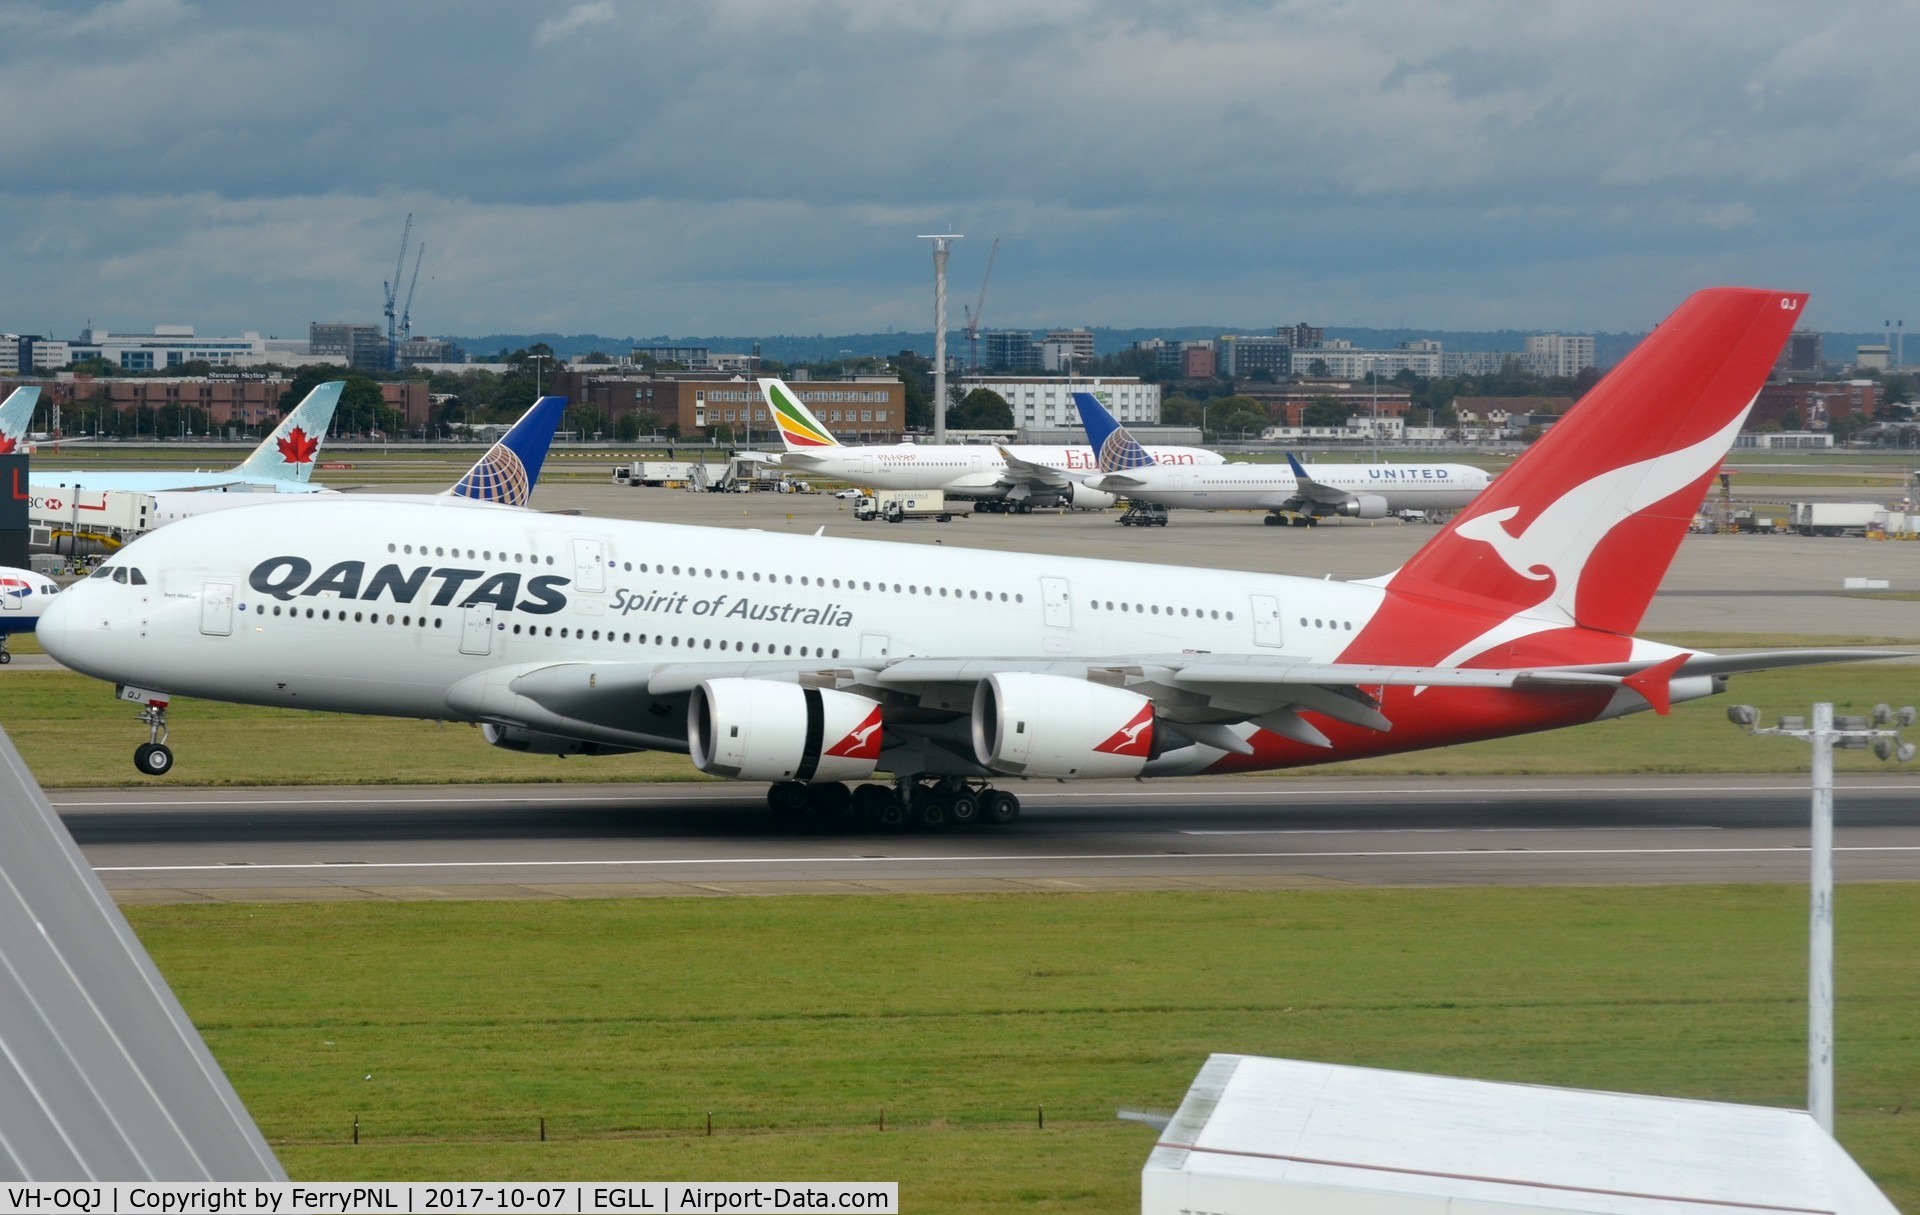 VH-OQJ, 2010 Airbus A380-842 C/N 062, Qantas A388 touching down in LHR